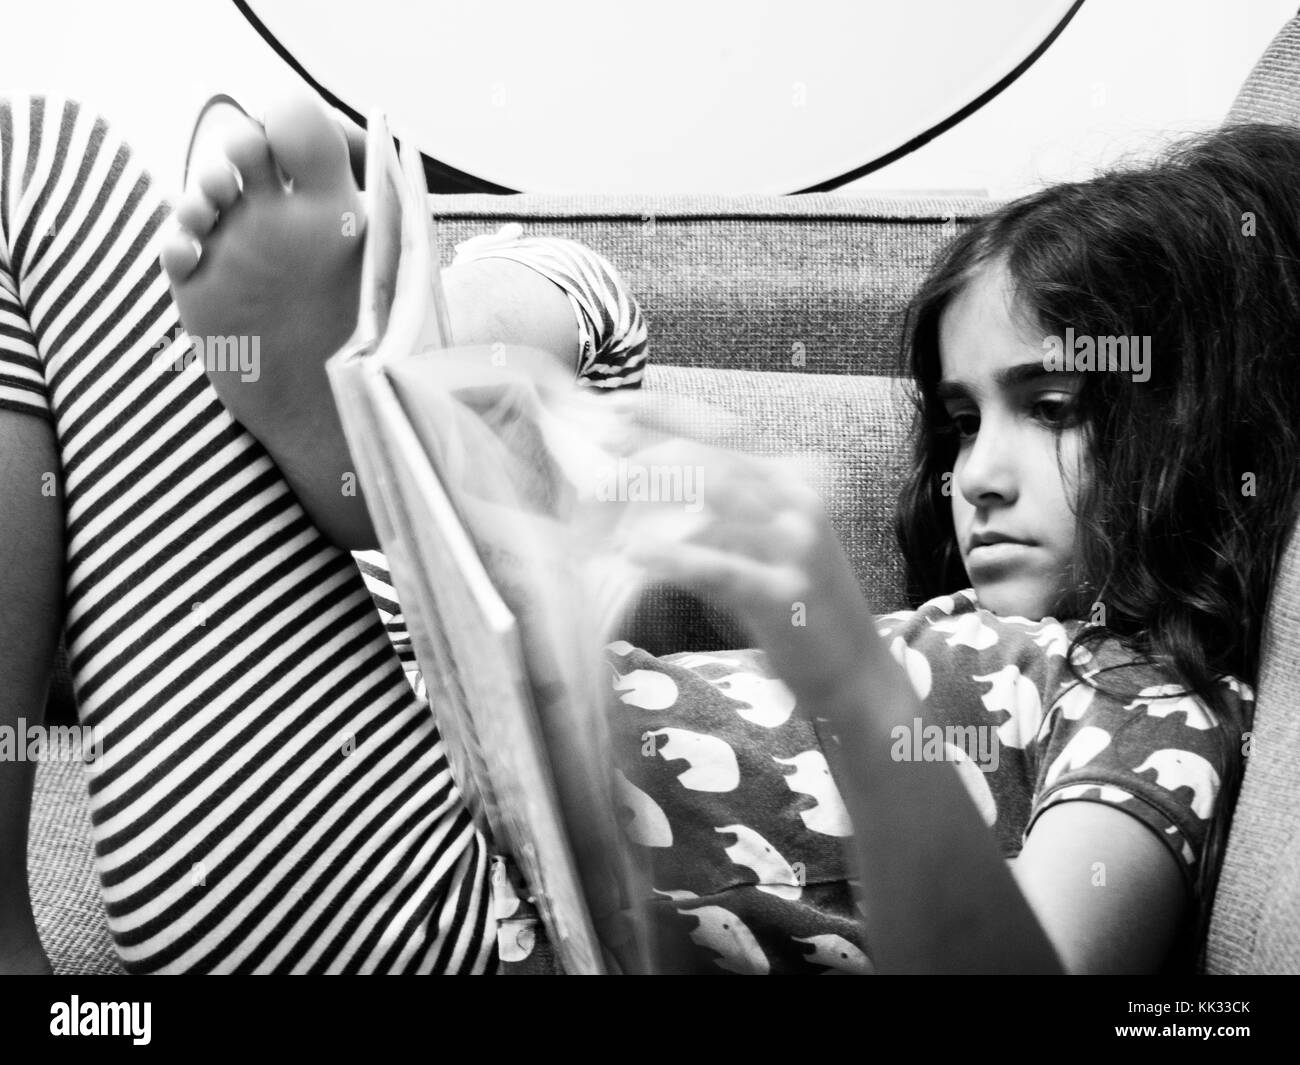 girl reading a book on a sofa Stock Photo